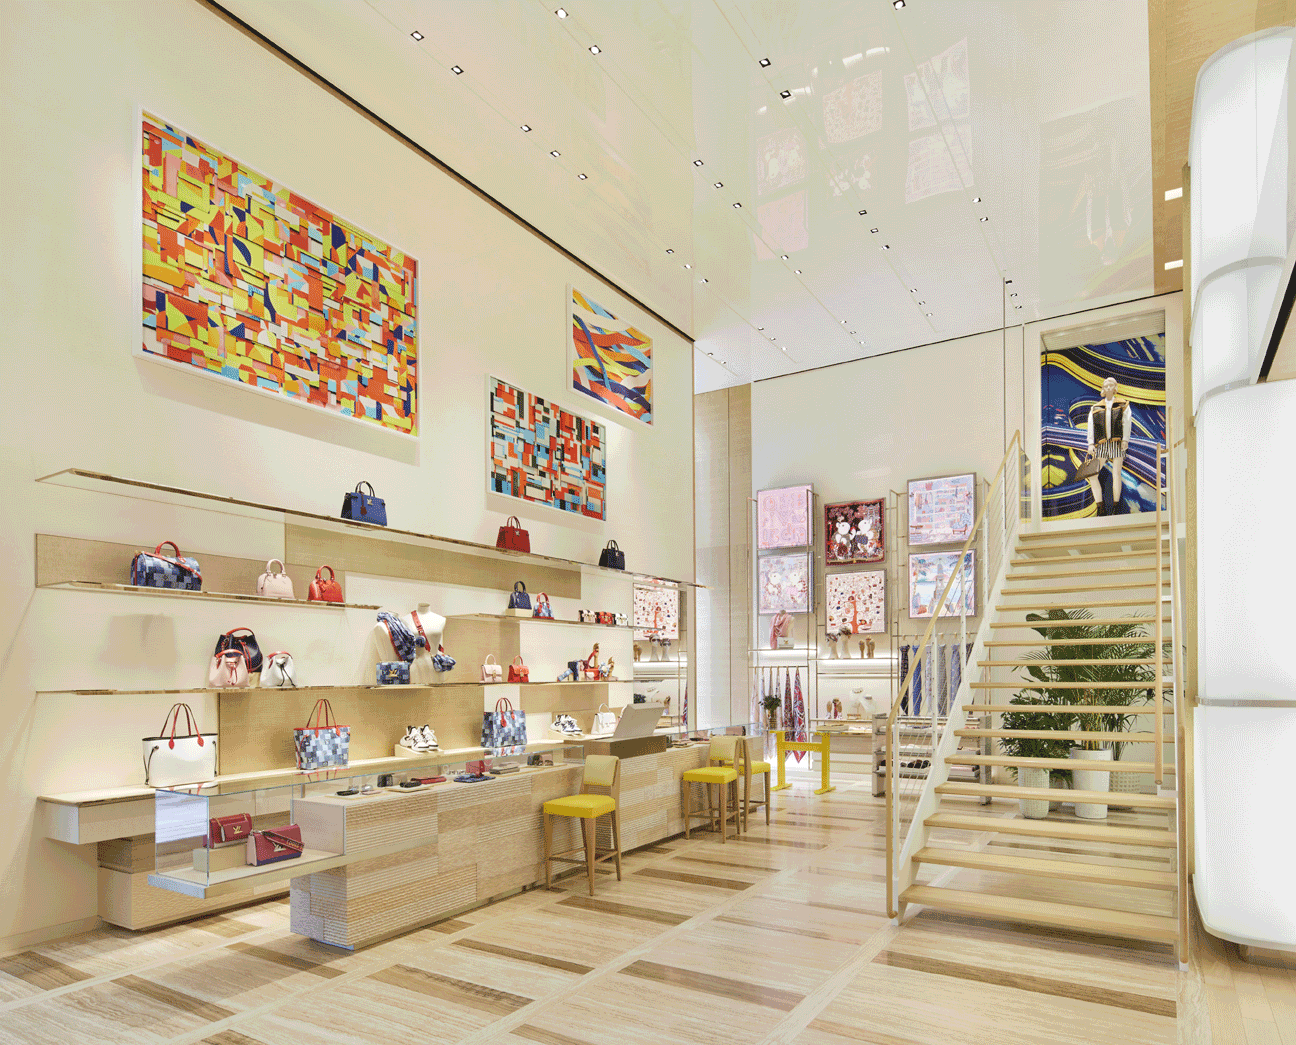 Louis Vuitton store New York by Jun Aoki